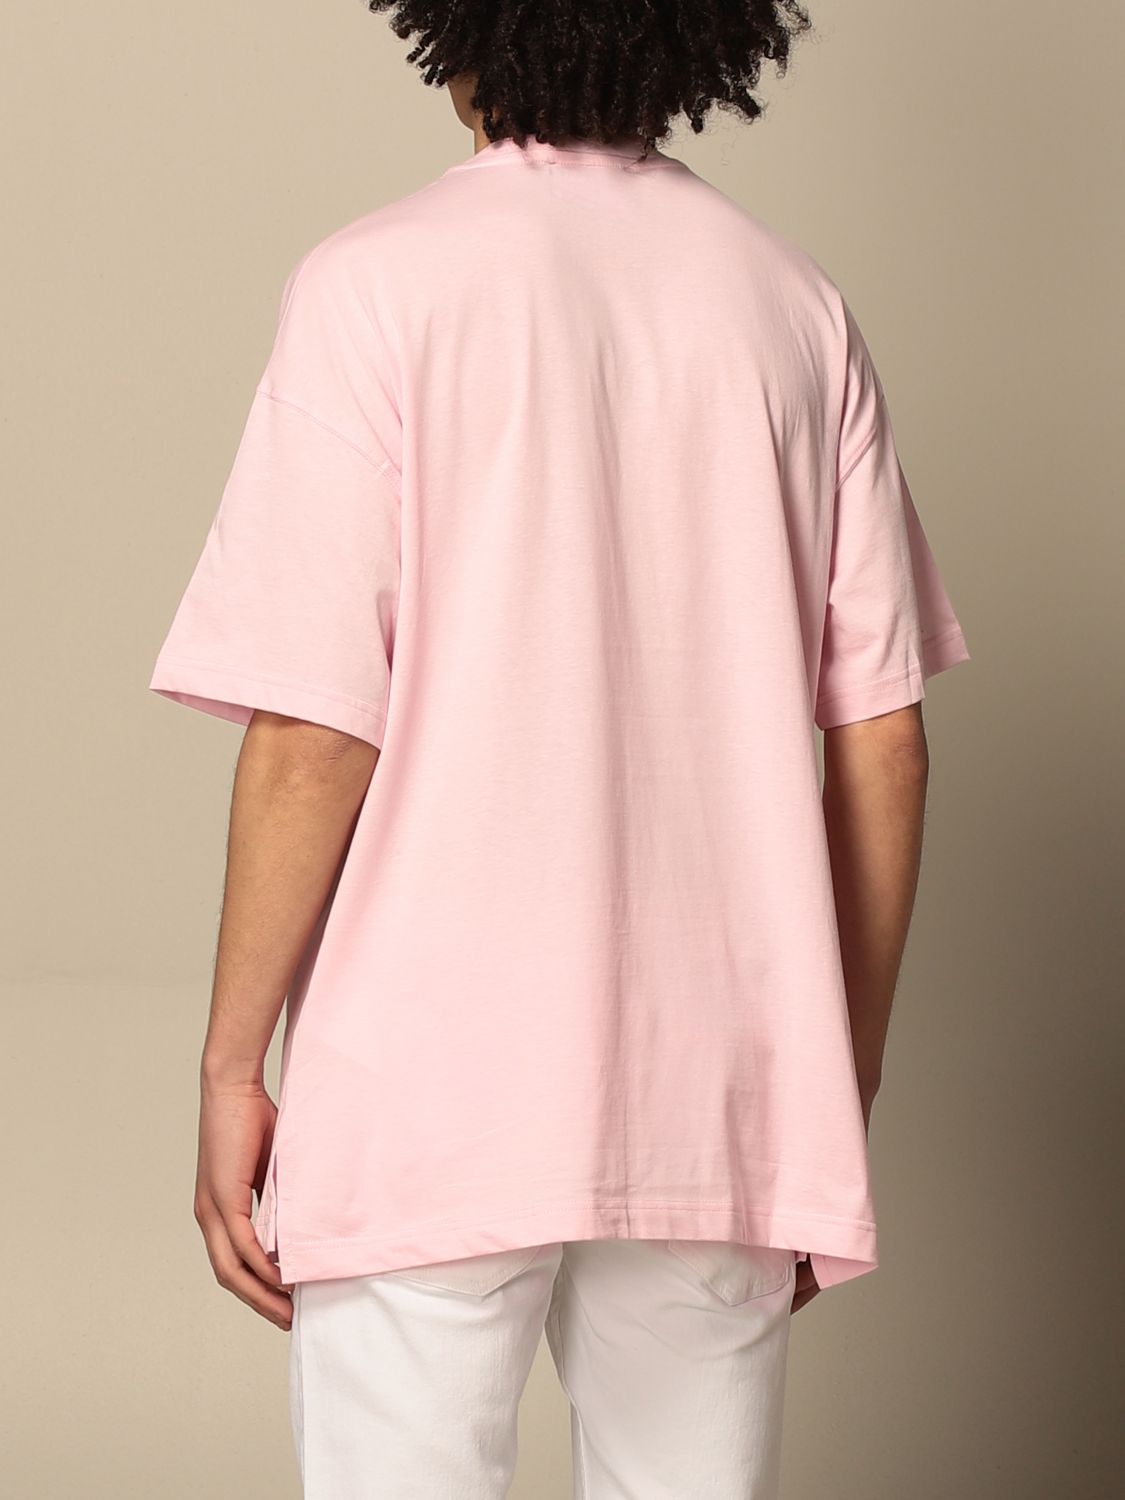 ヴェルサーチ・ジーンズ・クチュール(VERSACE JEANS COUTURE): Tシャツ メンズ - クリムゾン | Tシャツ